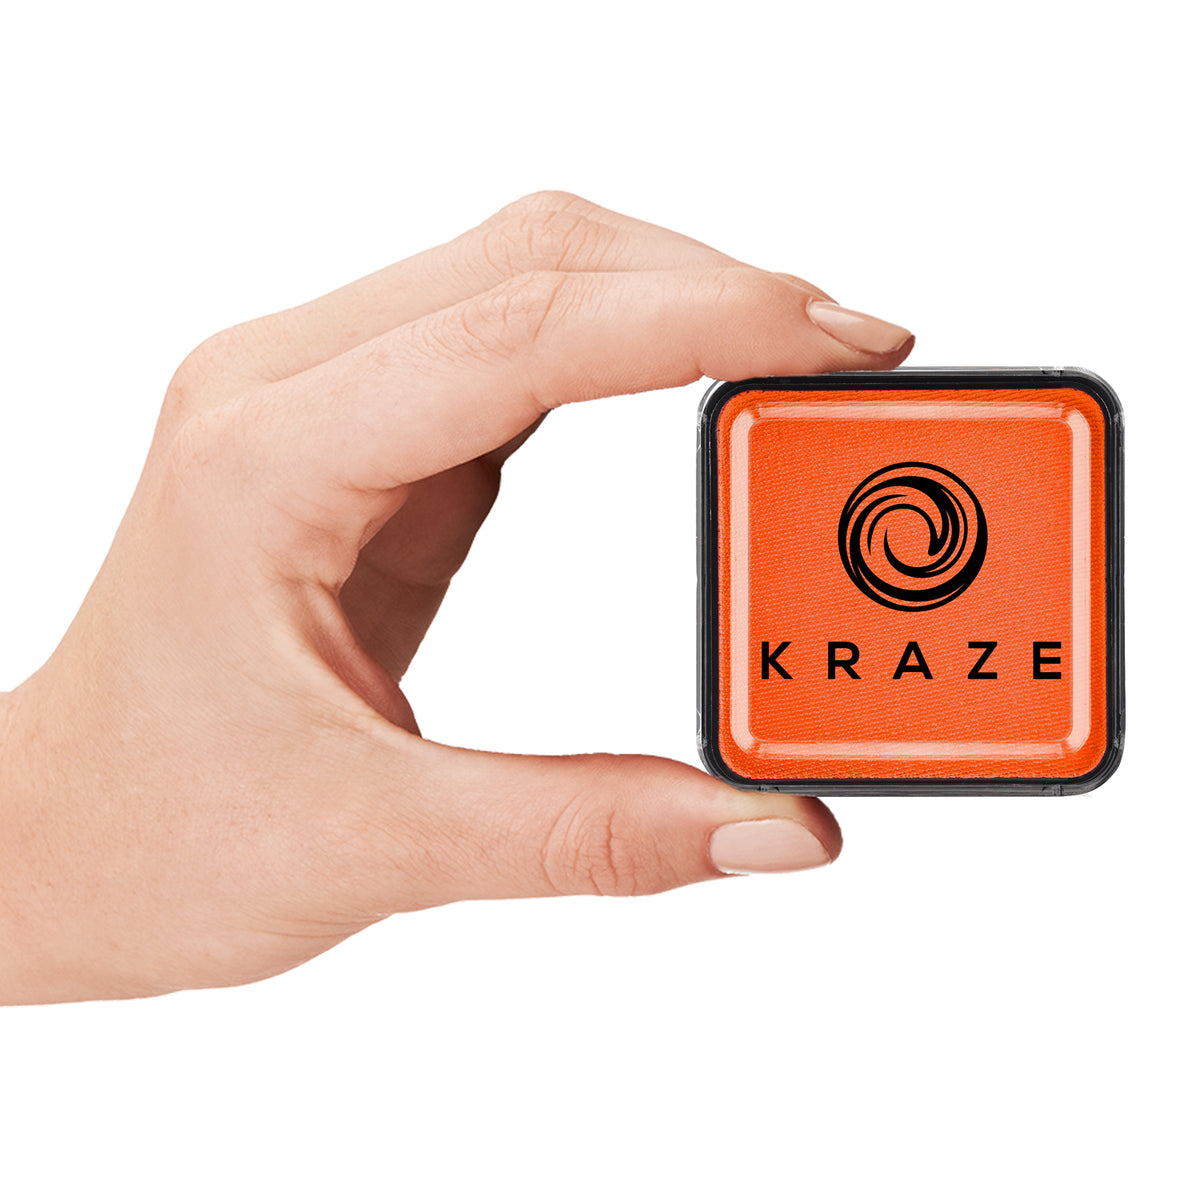 Kraze FX Face Paint - Orange (25 gm)